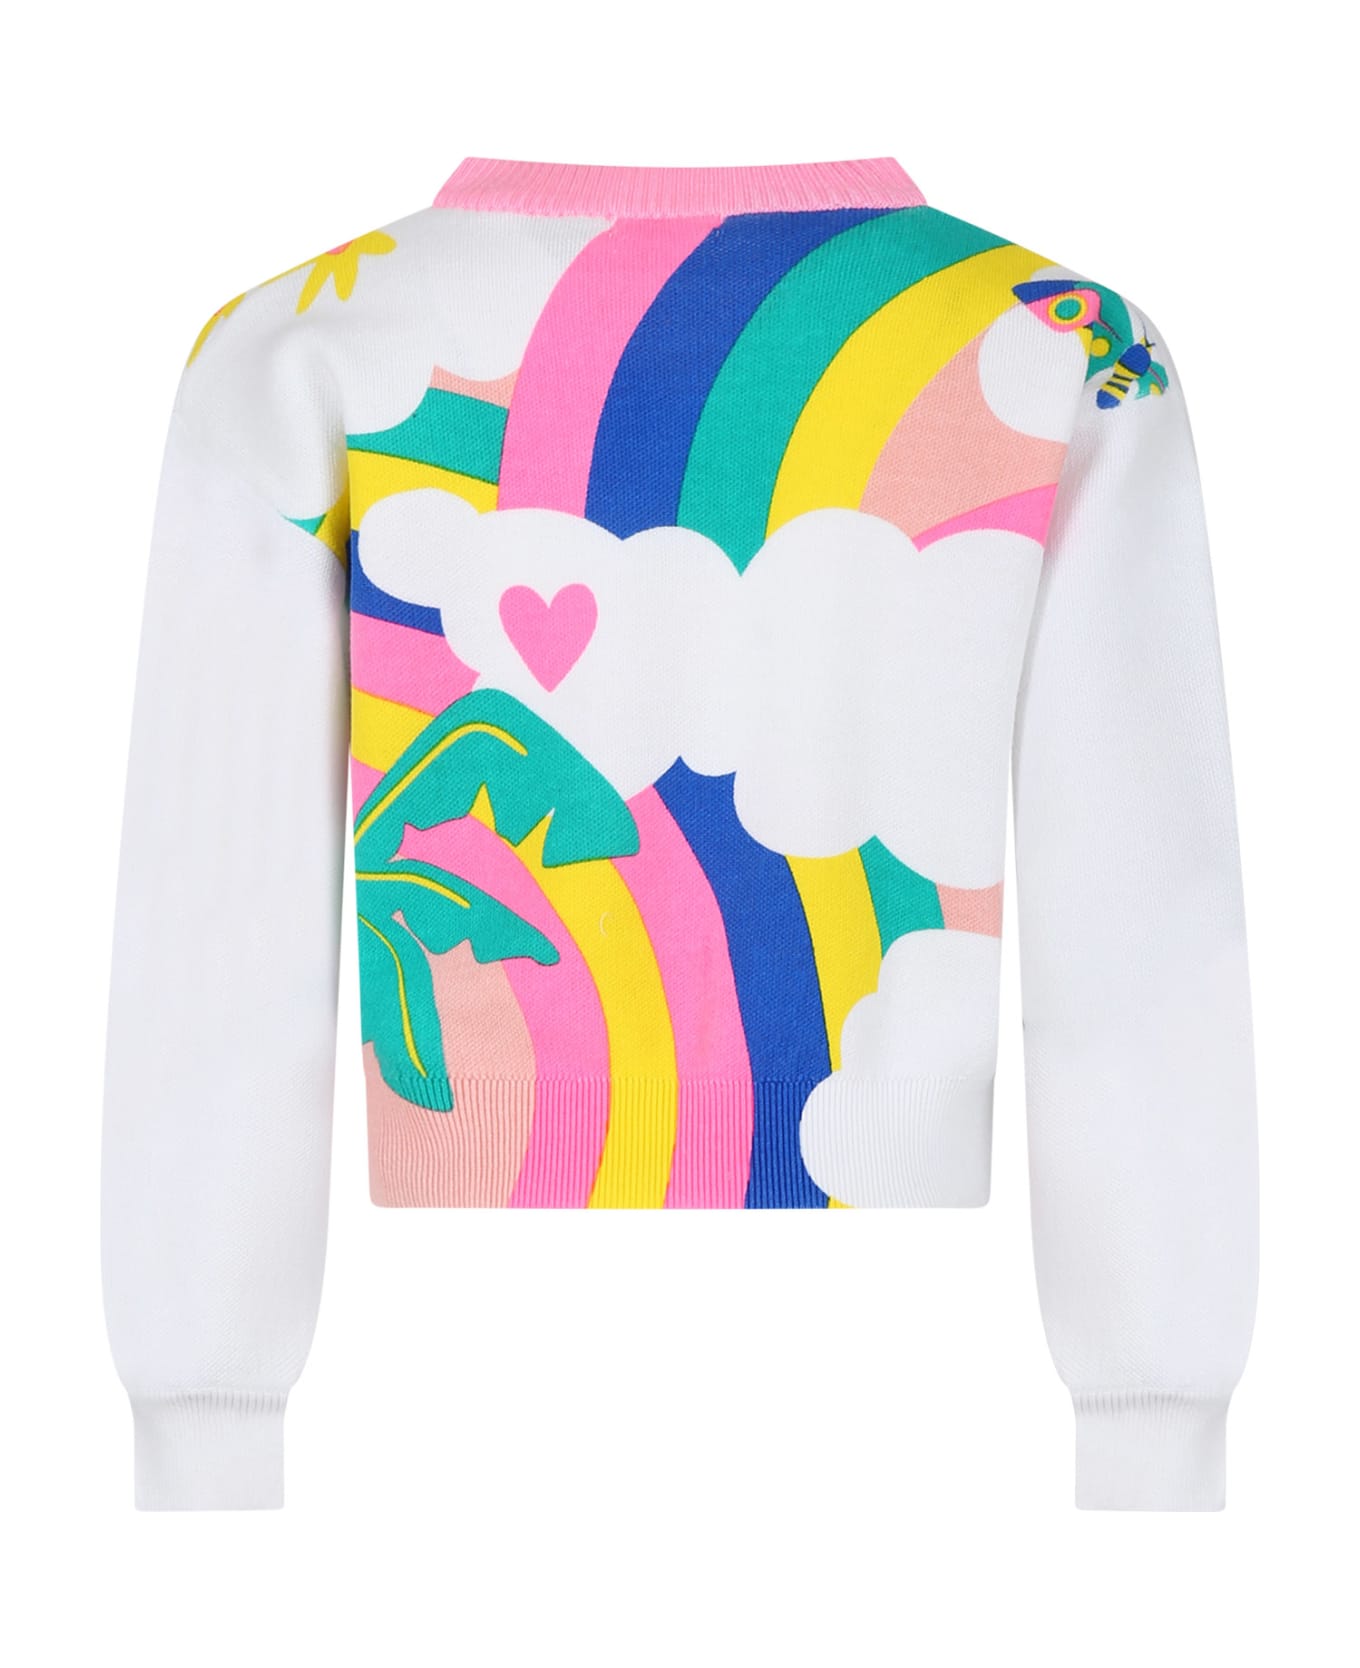 Billieblush Multicolored Sweater For Girl - Multicolor